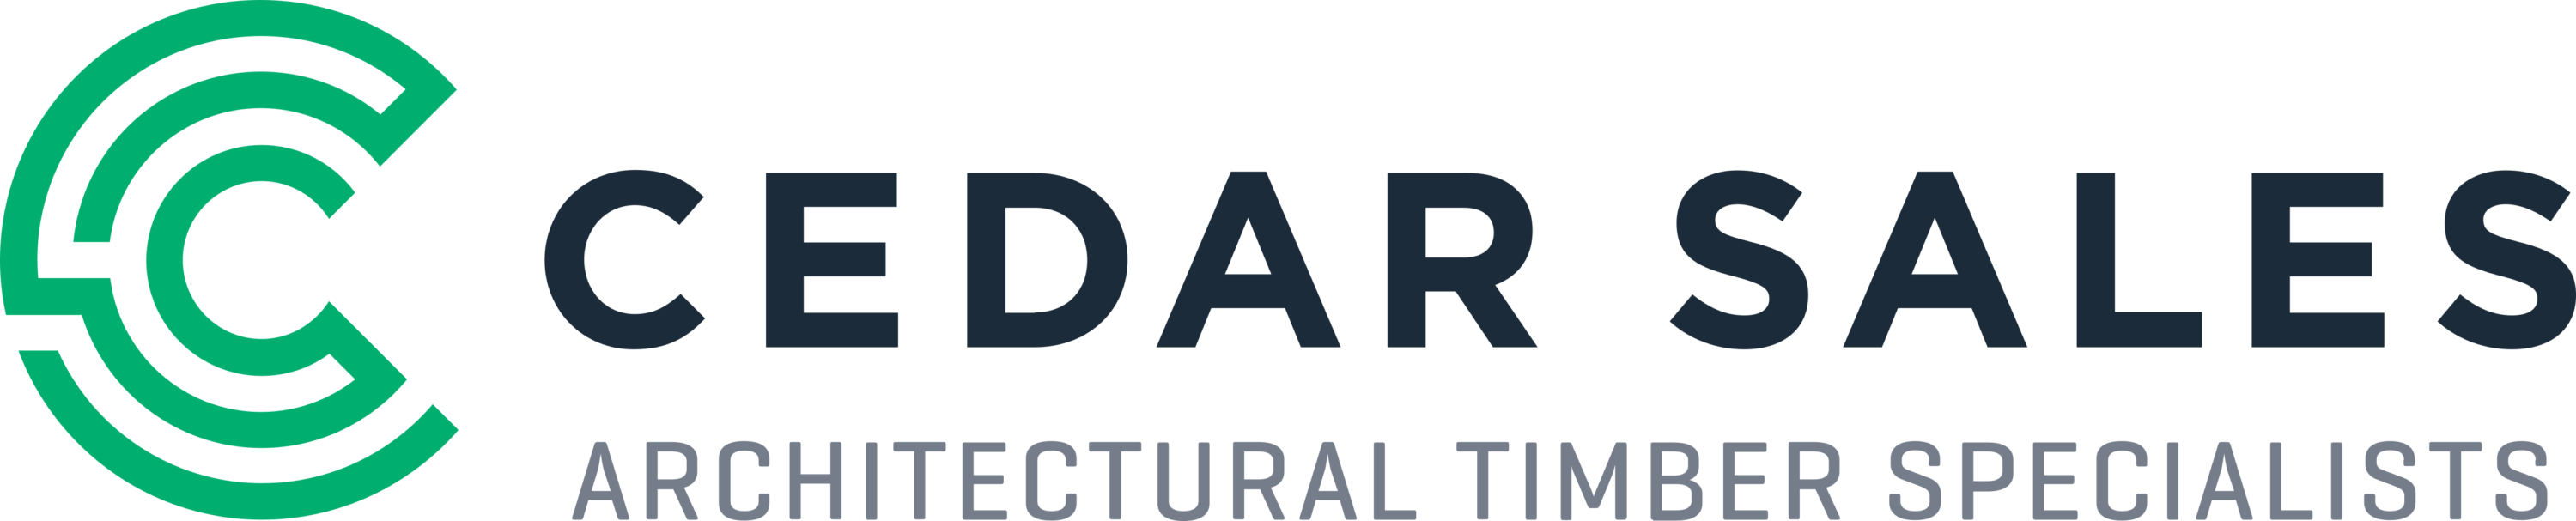 Cedar Sales Logo